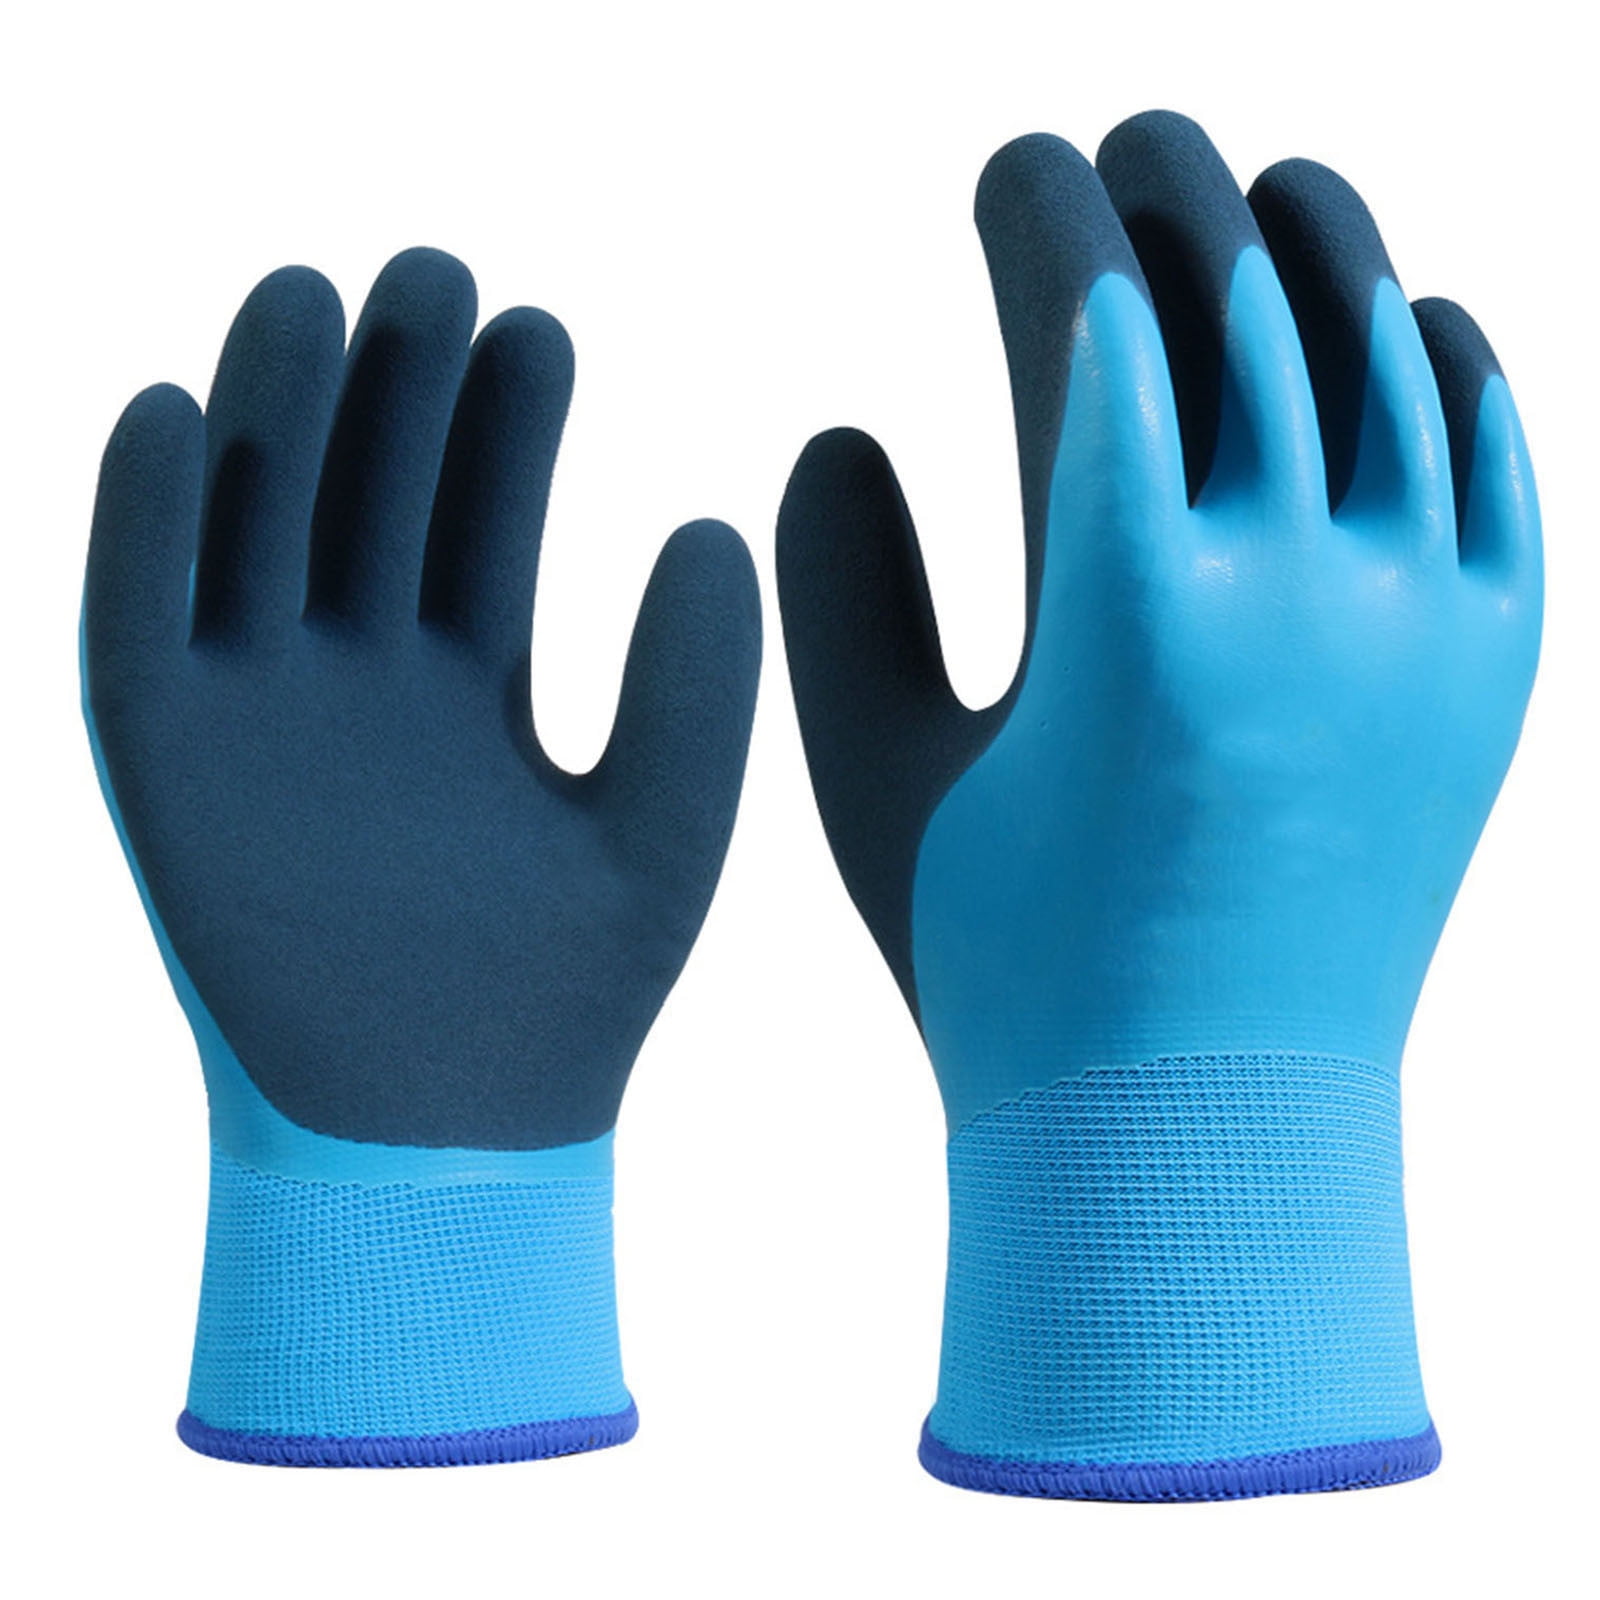 Fully Latex Coated Grip Waterproof Cold Winter Work Gloves Builders Gardening 